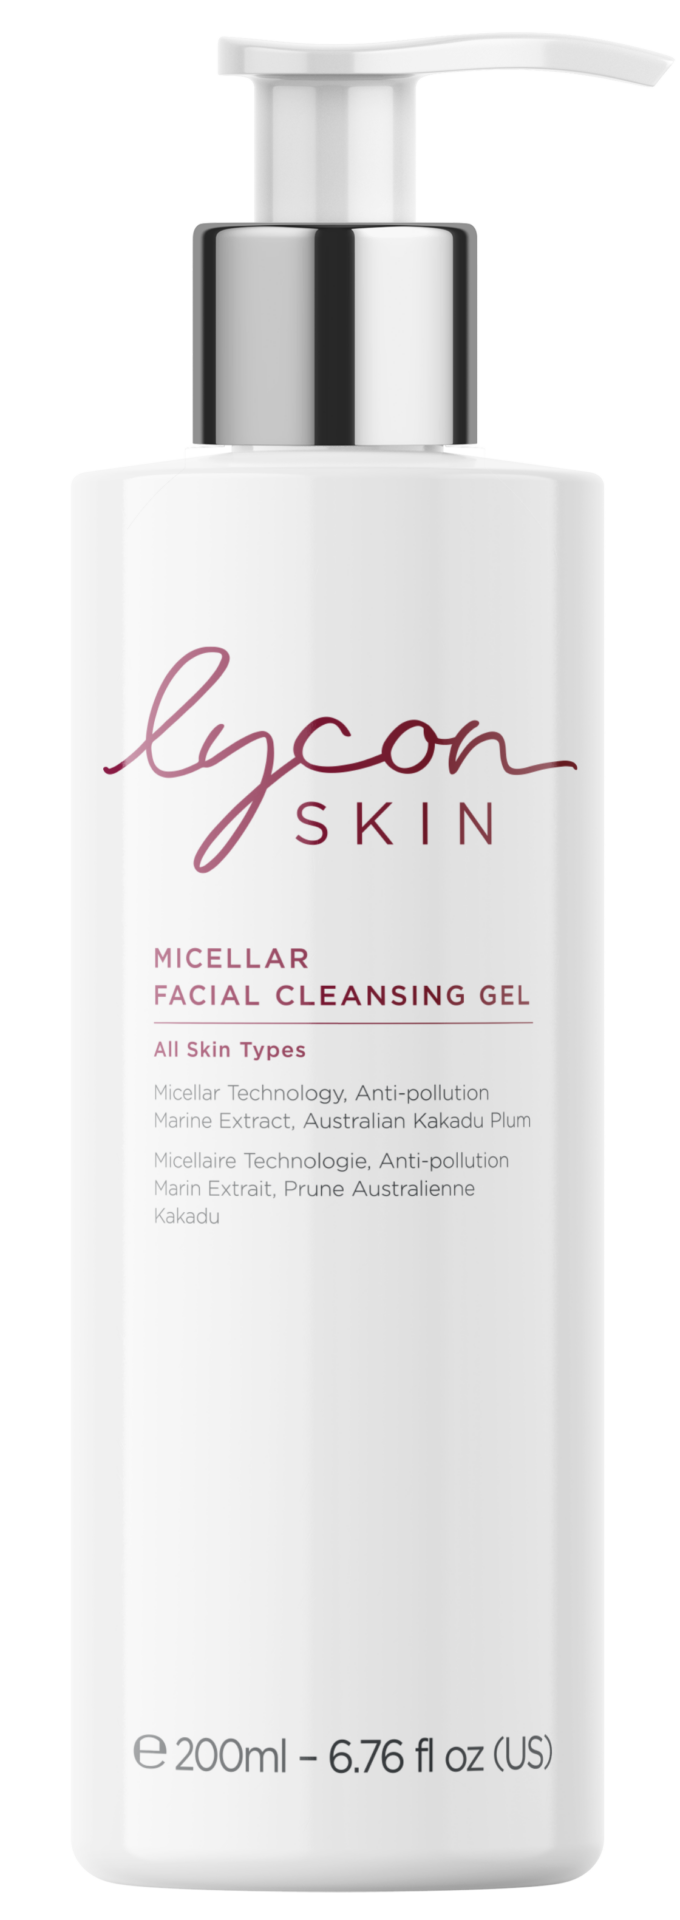 Lycon Skin Micellar Facial Cleansing Gel